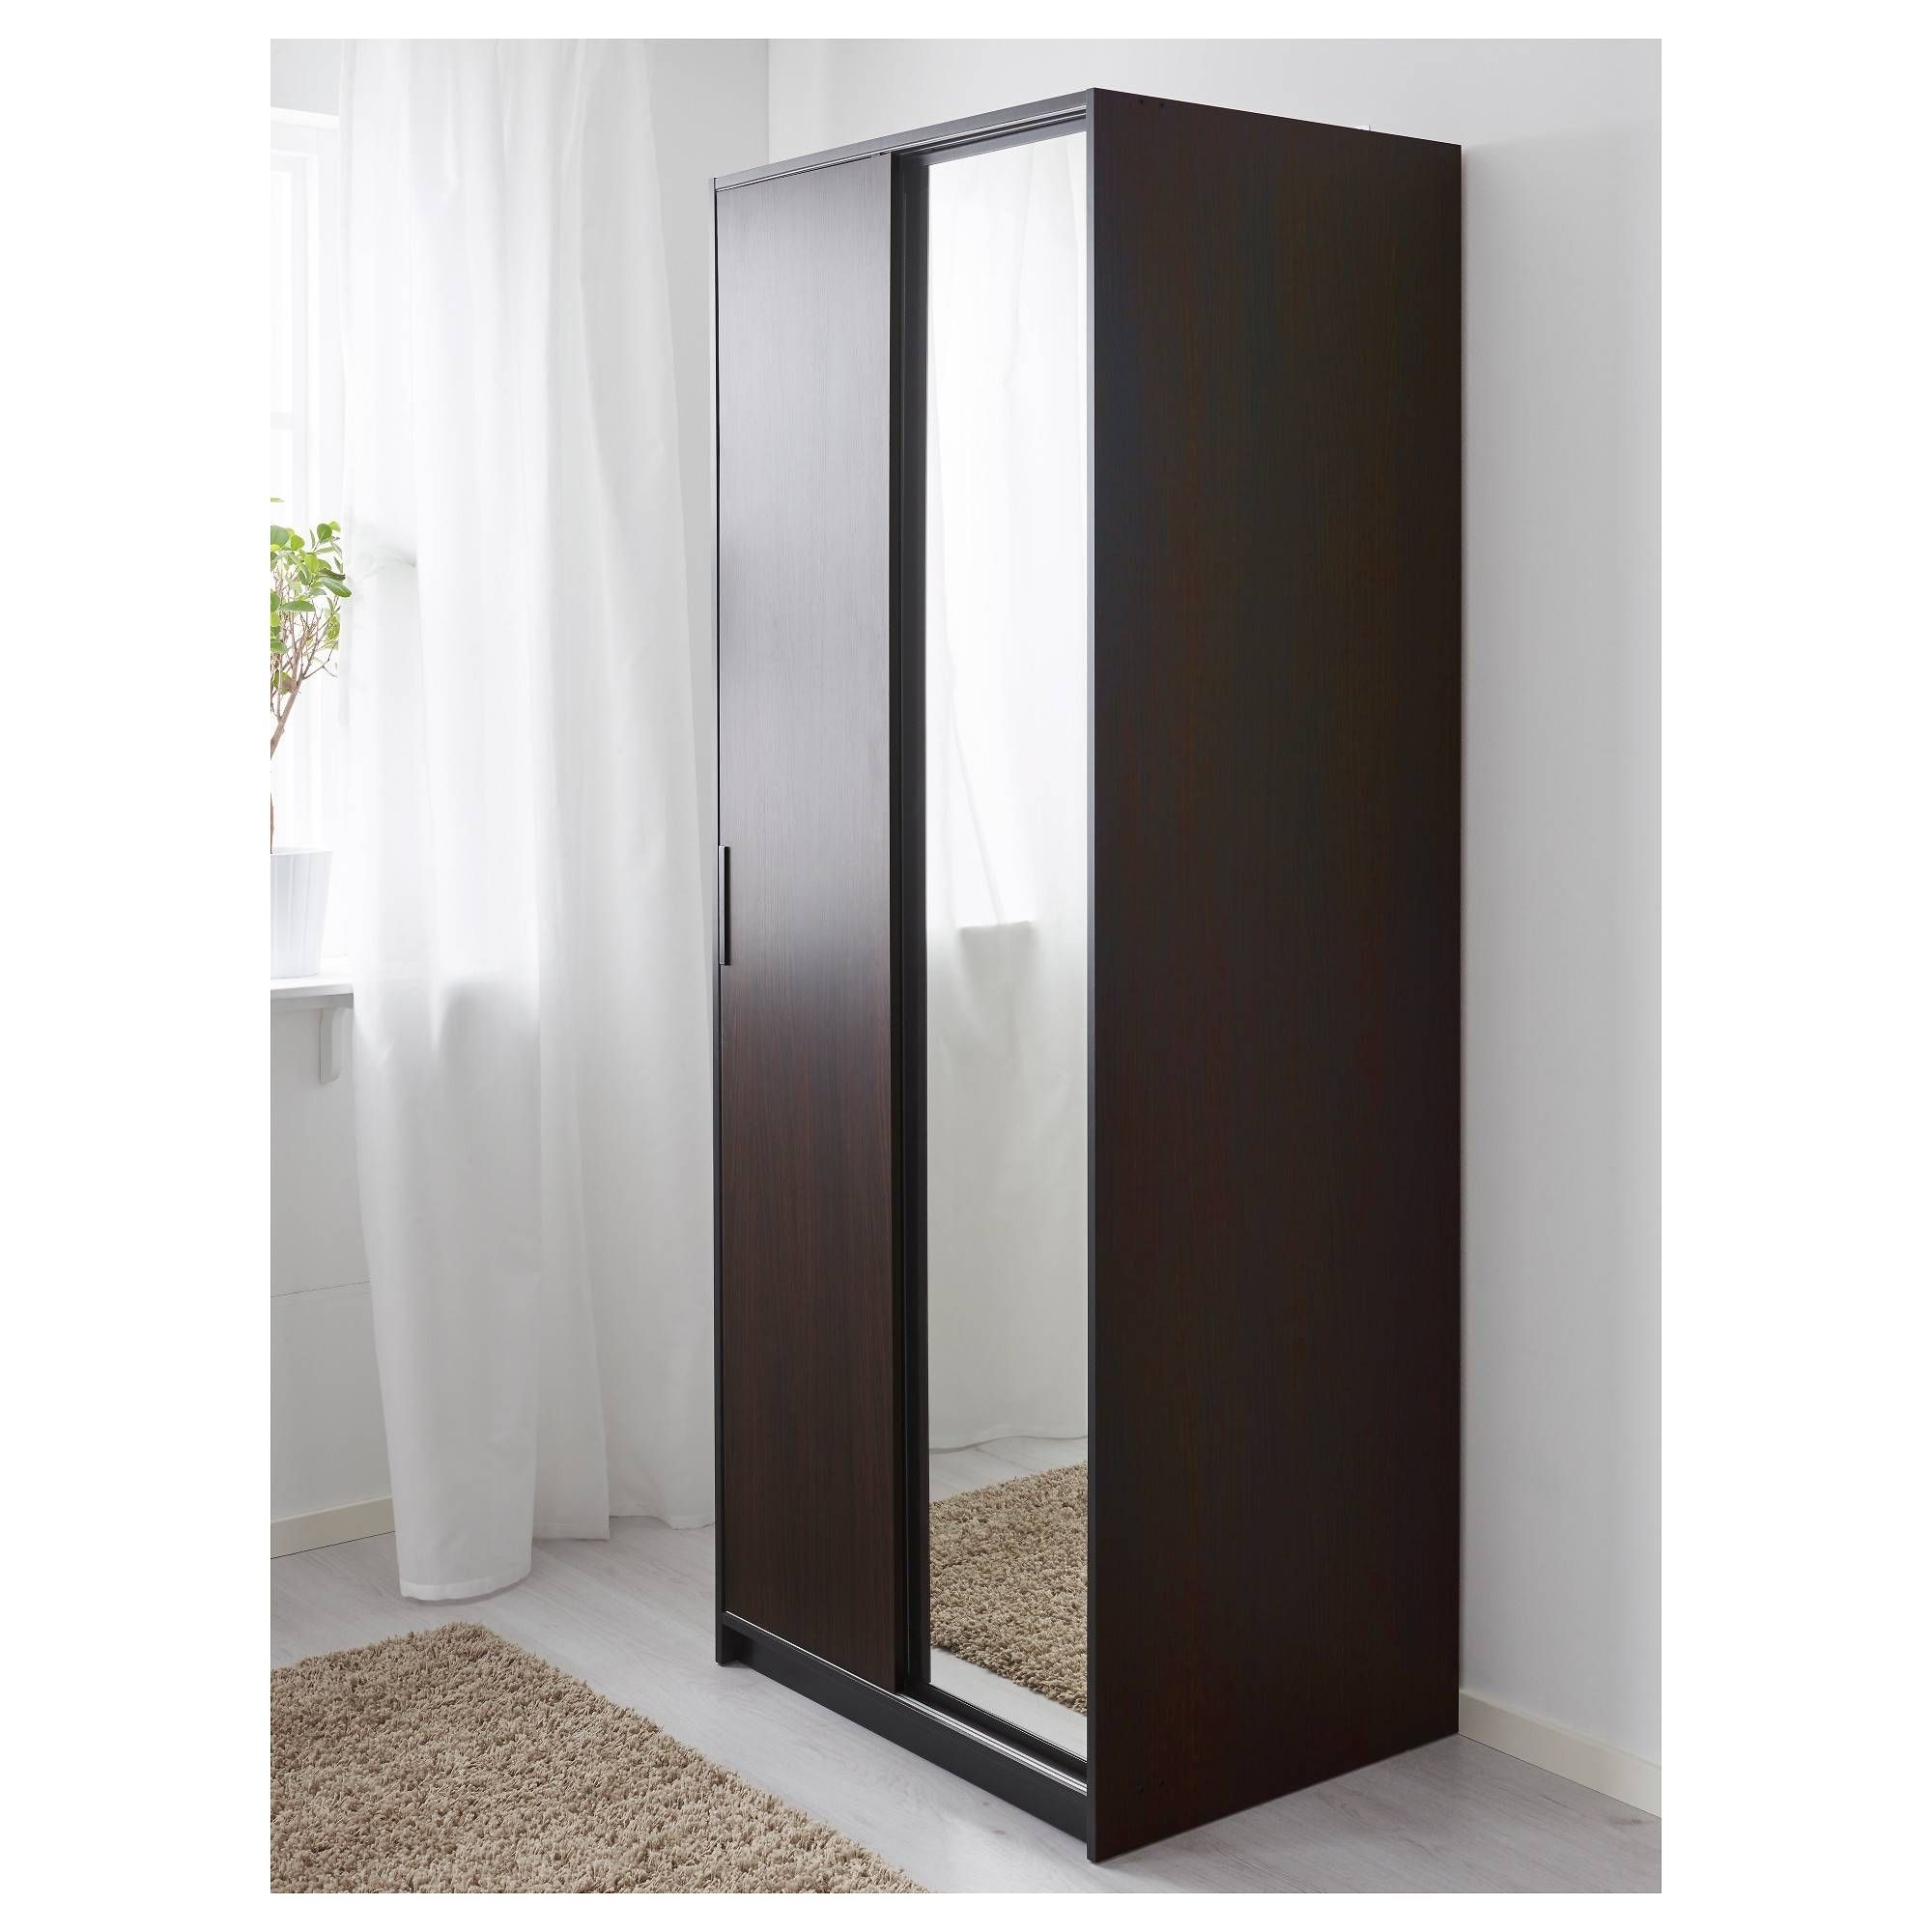 Trysil Wardrobe Dark Brown/mirror Glass 79x61x202 Cm – Ikea With Dark Brown Wardrobes (View 7 of 15)